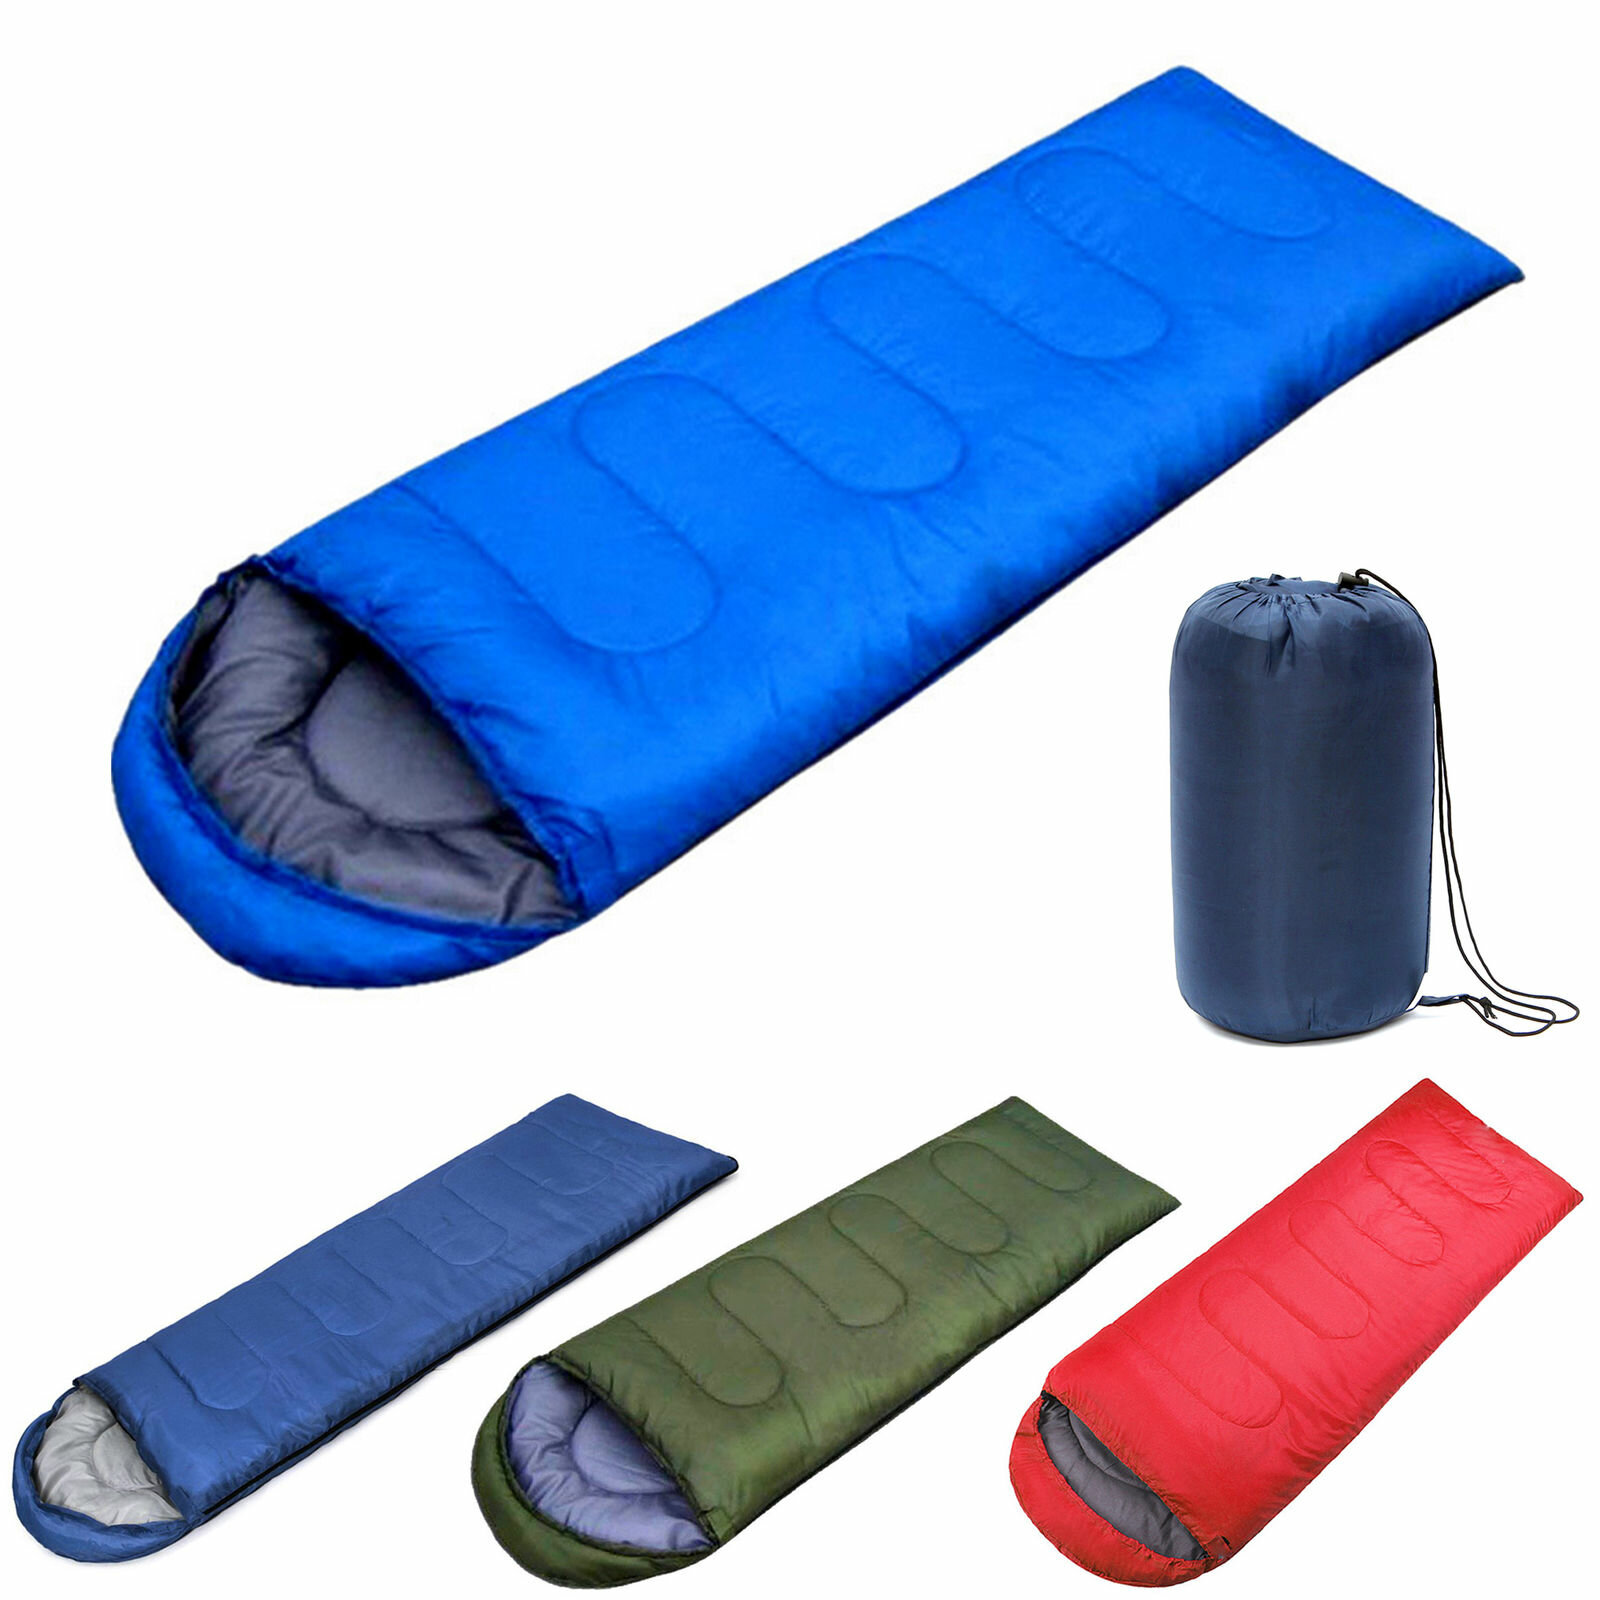 IPRee impermeabile 210x75 cm per dormire Borsa persona singola per escursioni all'aperto campeggio caldo Soft custodia per adulto casa